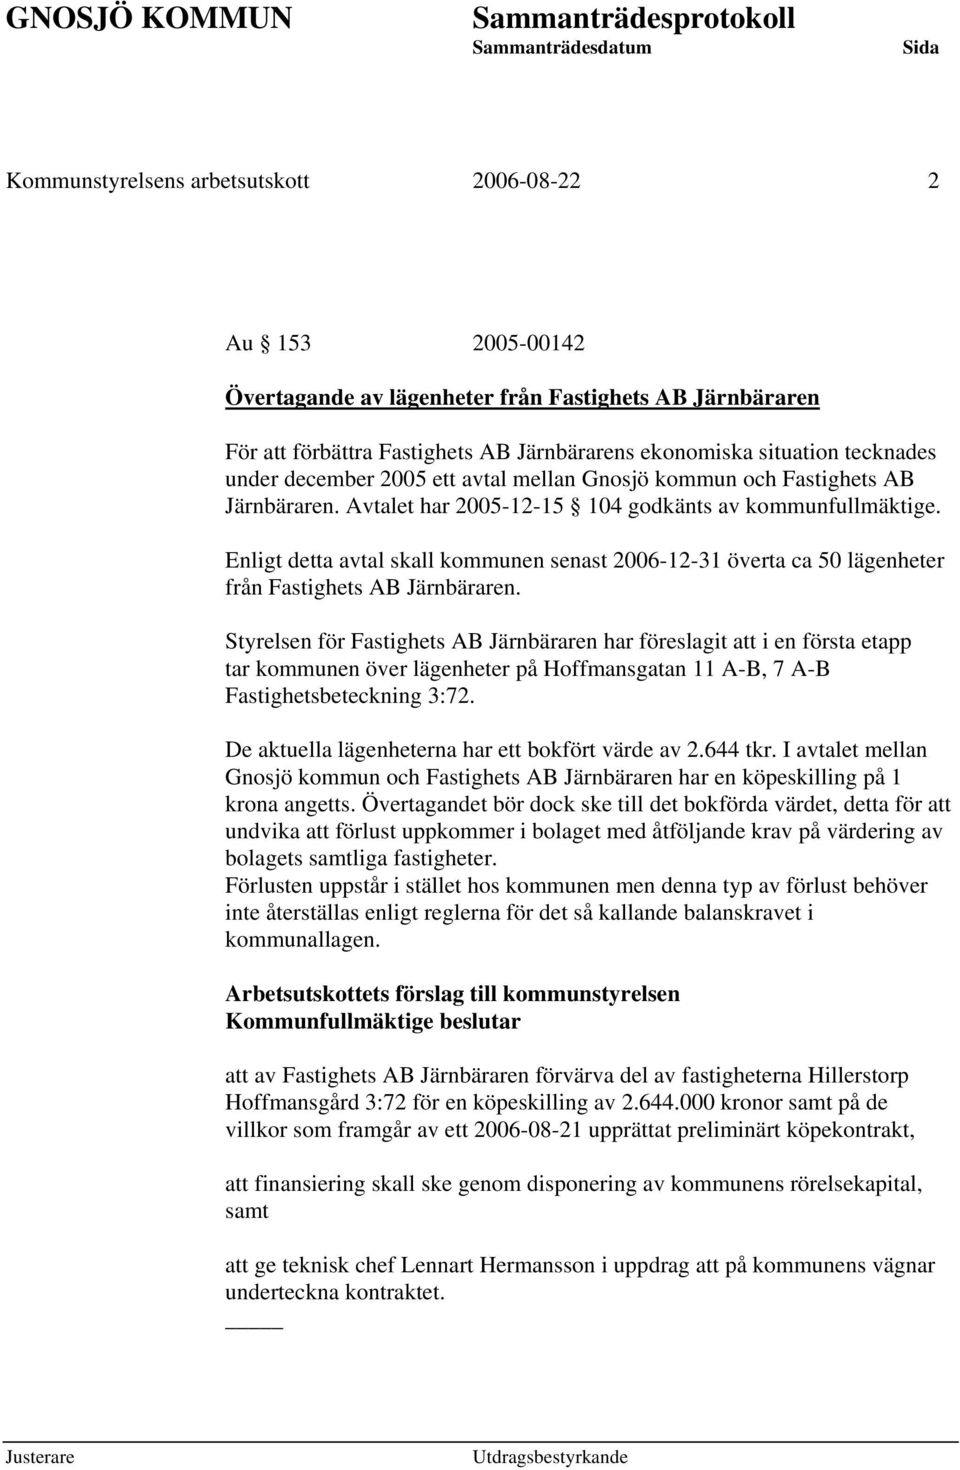 Enligt detta avtal skall kommunen senast 2006-12-31 överta ca 50 lägenheter från Fastighets AB Järnbäraren.